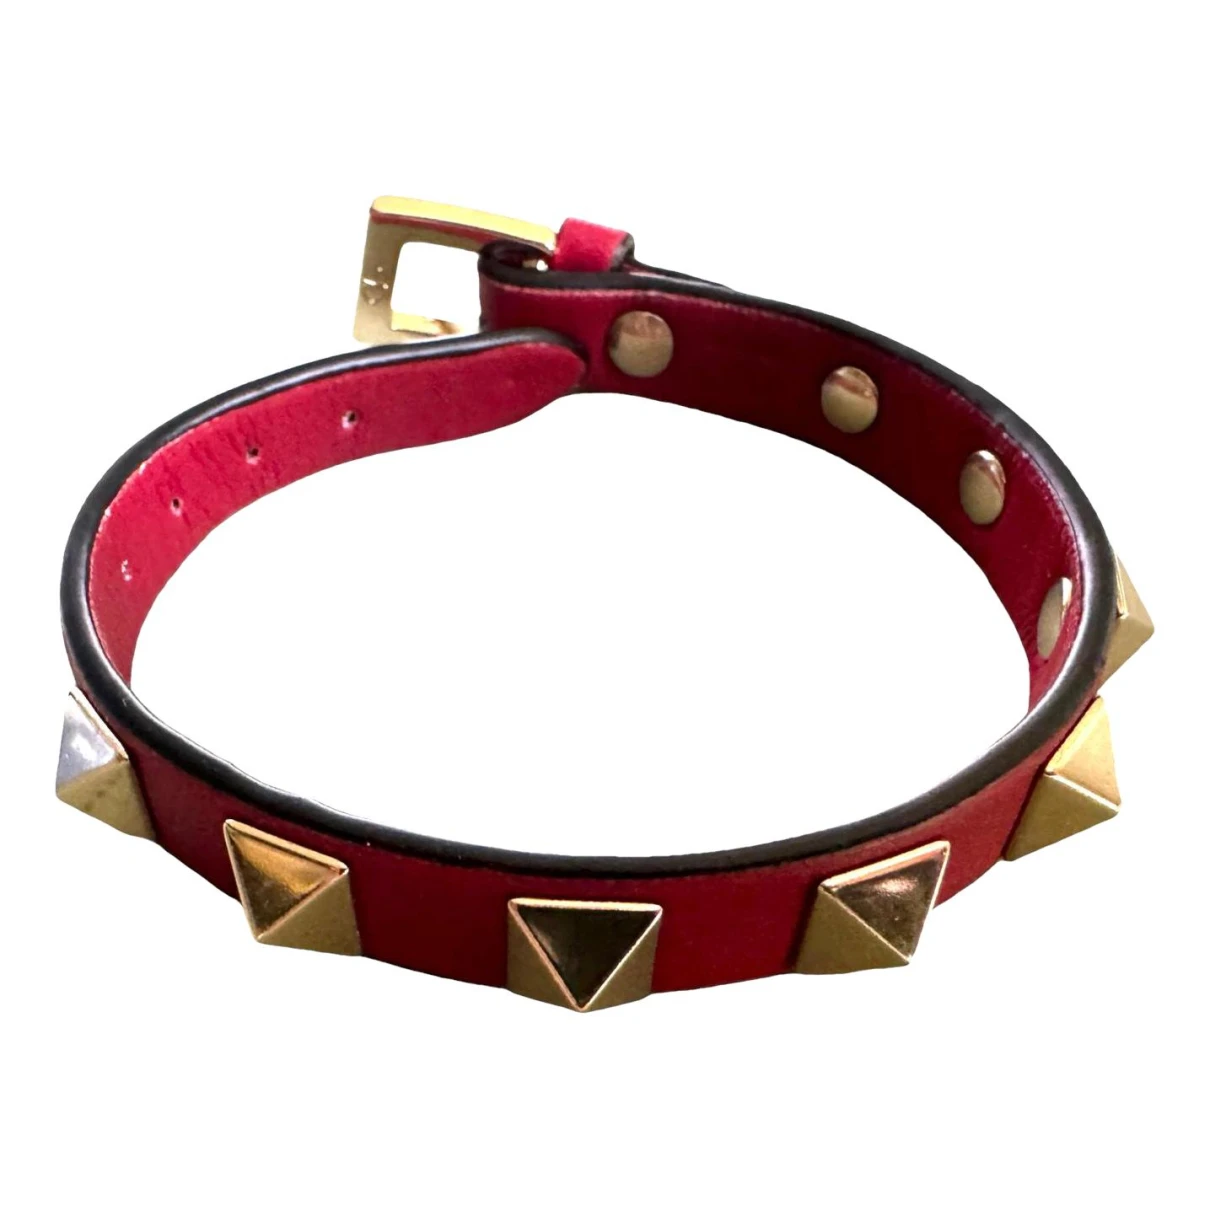 Pre-owned Valentino Garavani Leather Bracelet In Red